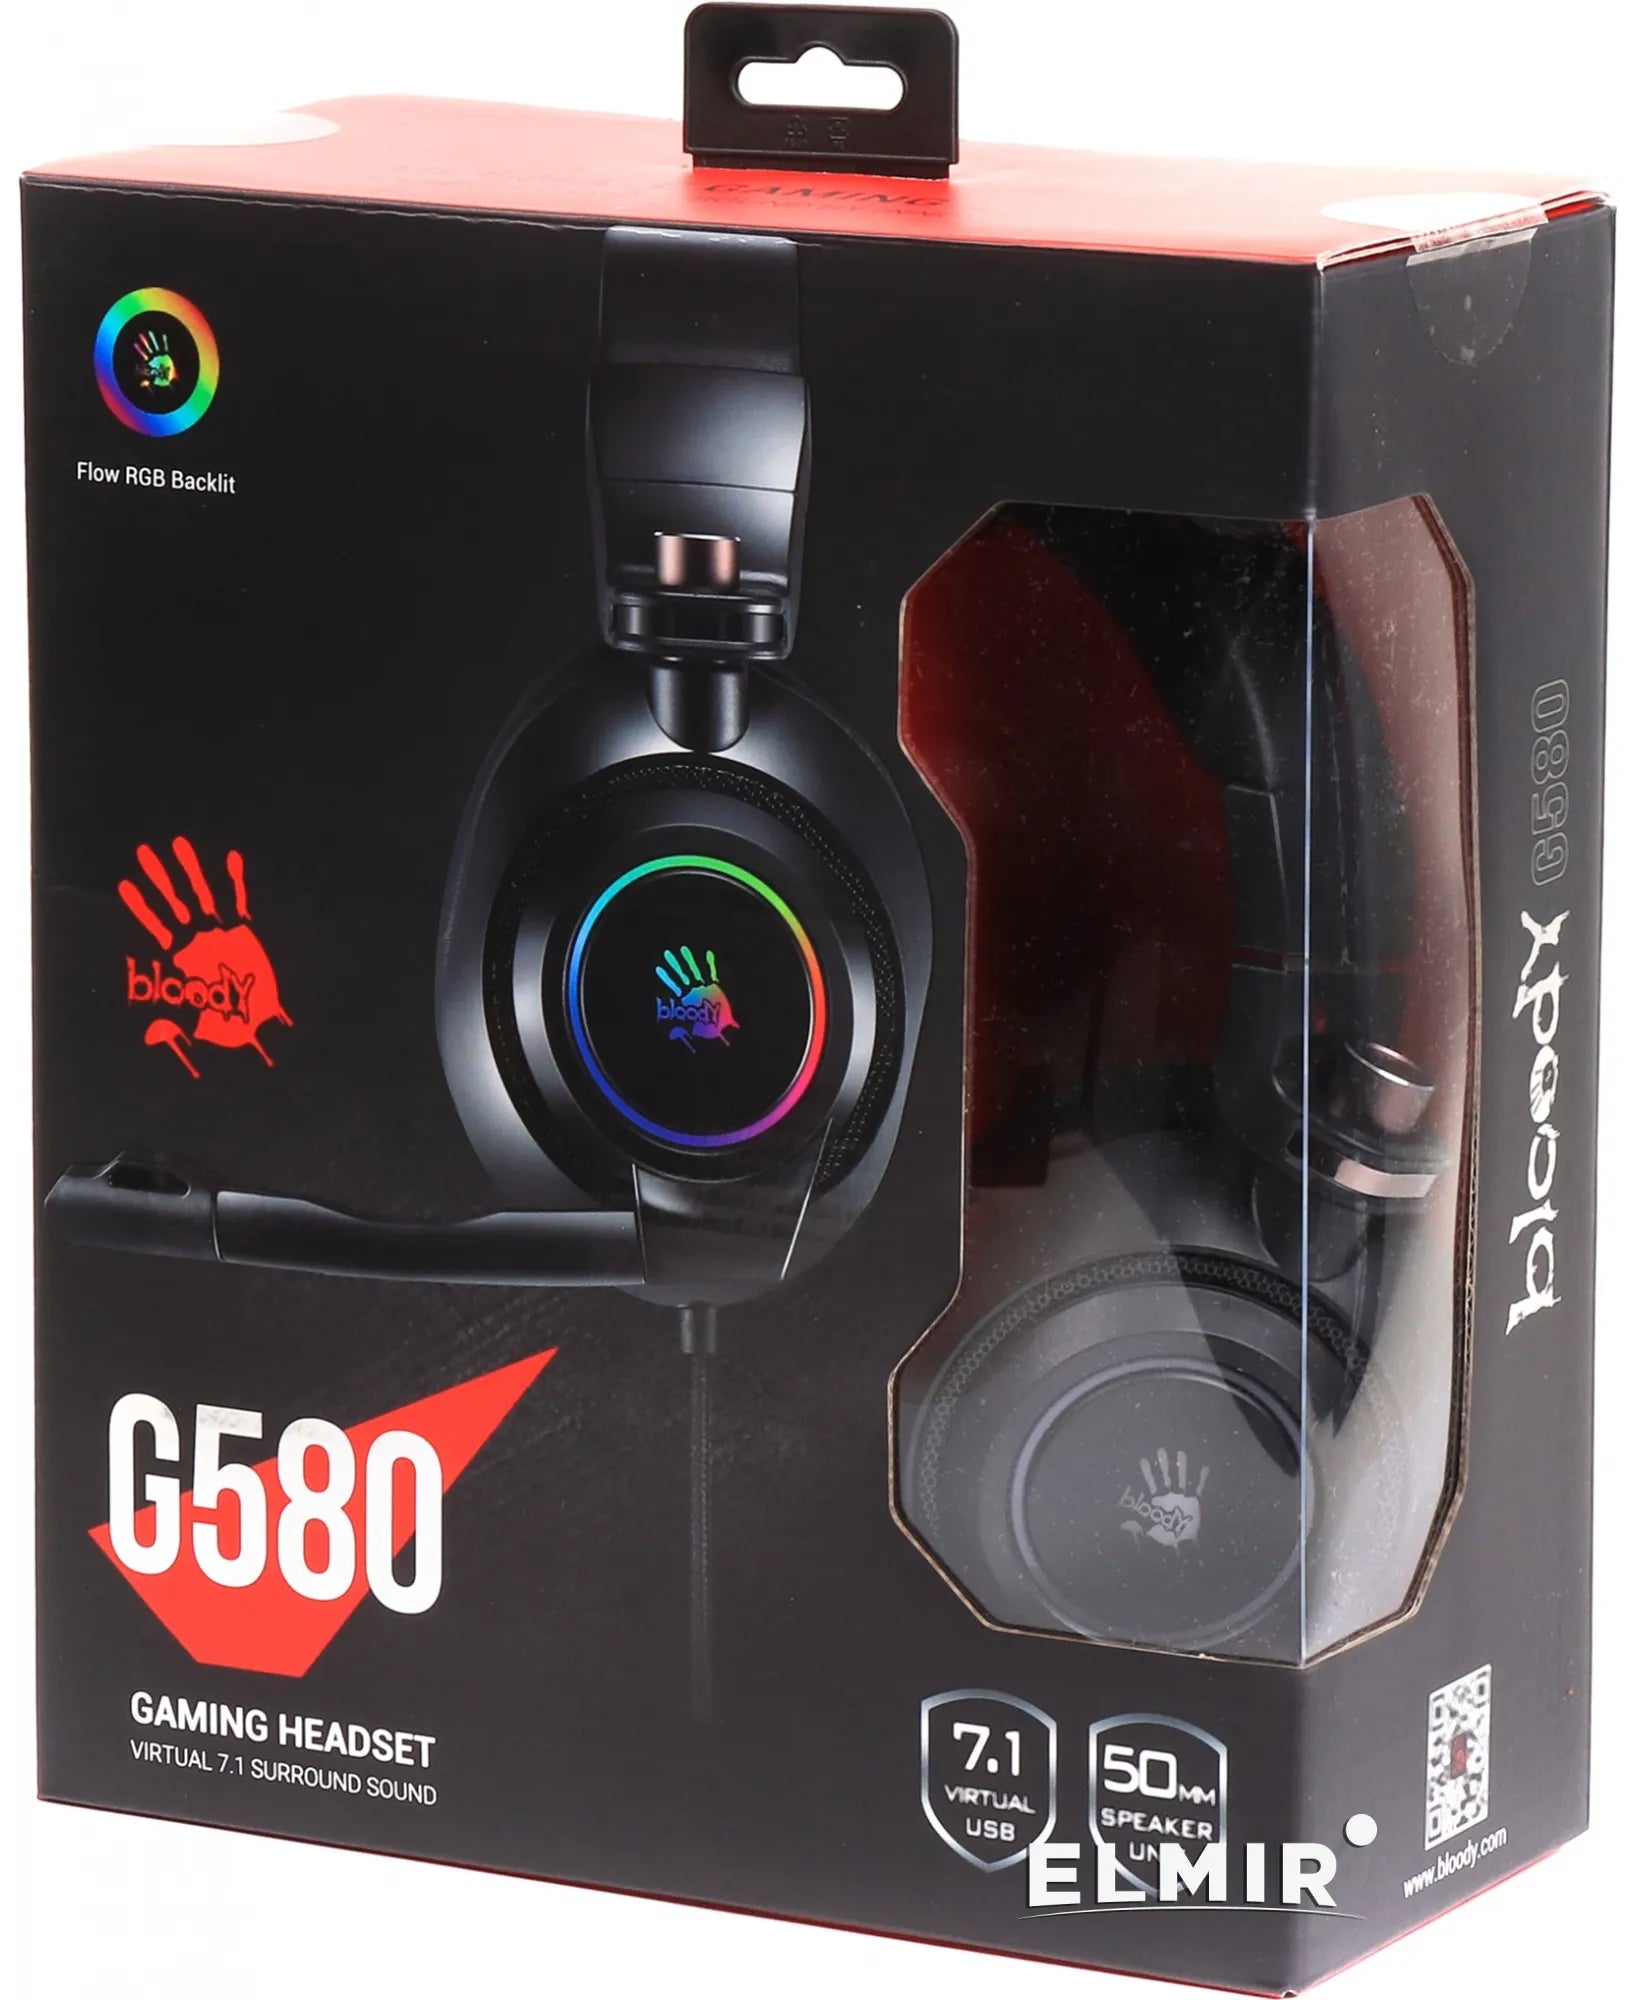 Bloody G580 Virtual 7.1 Surround Sound Gaming Headset